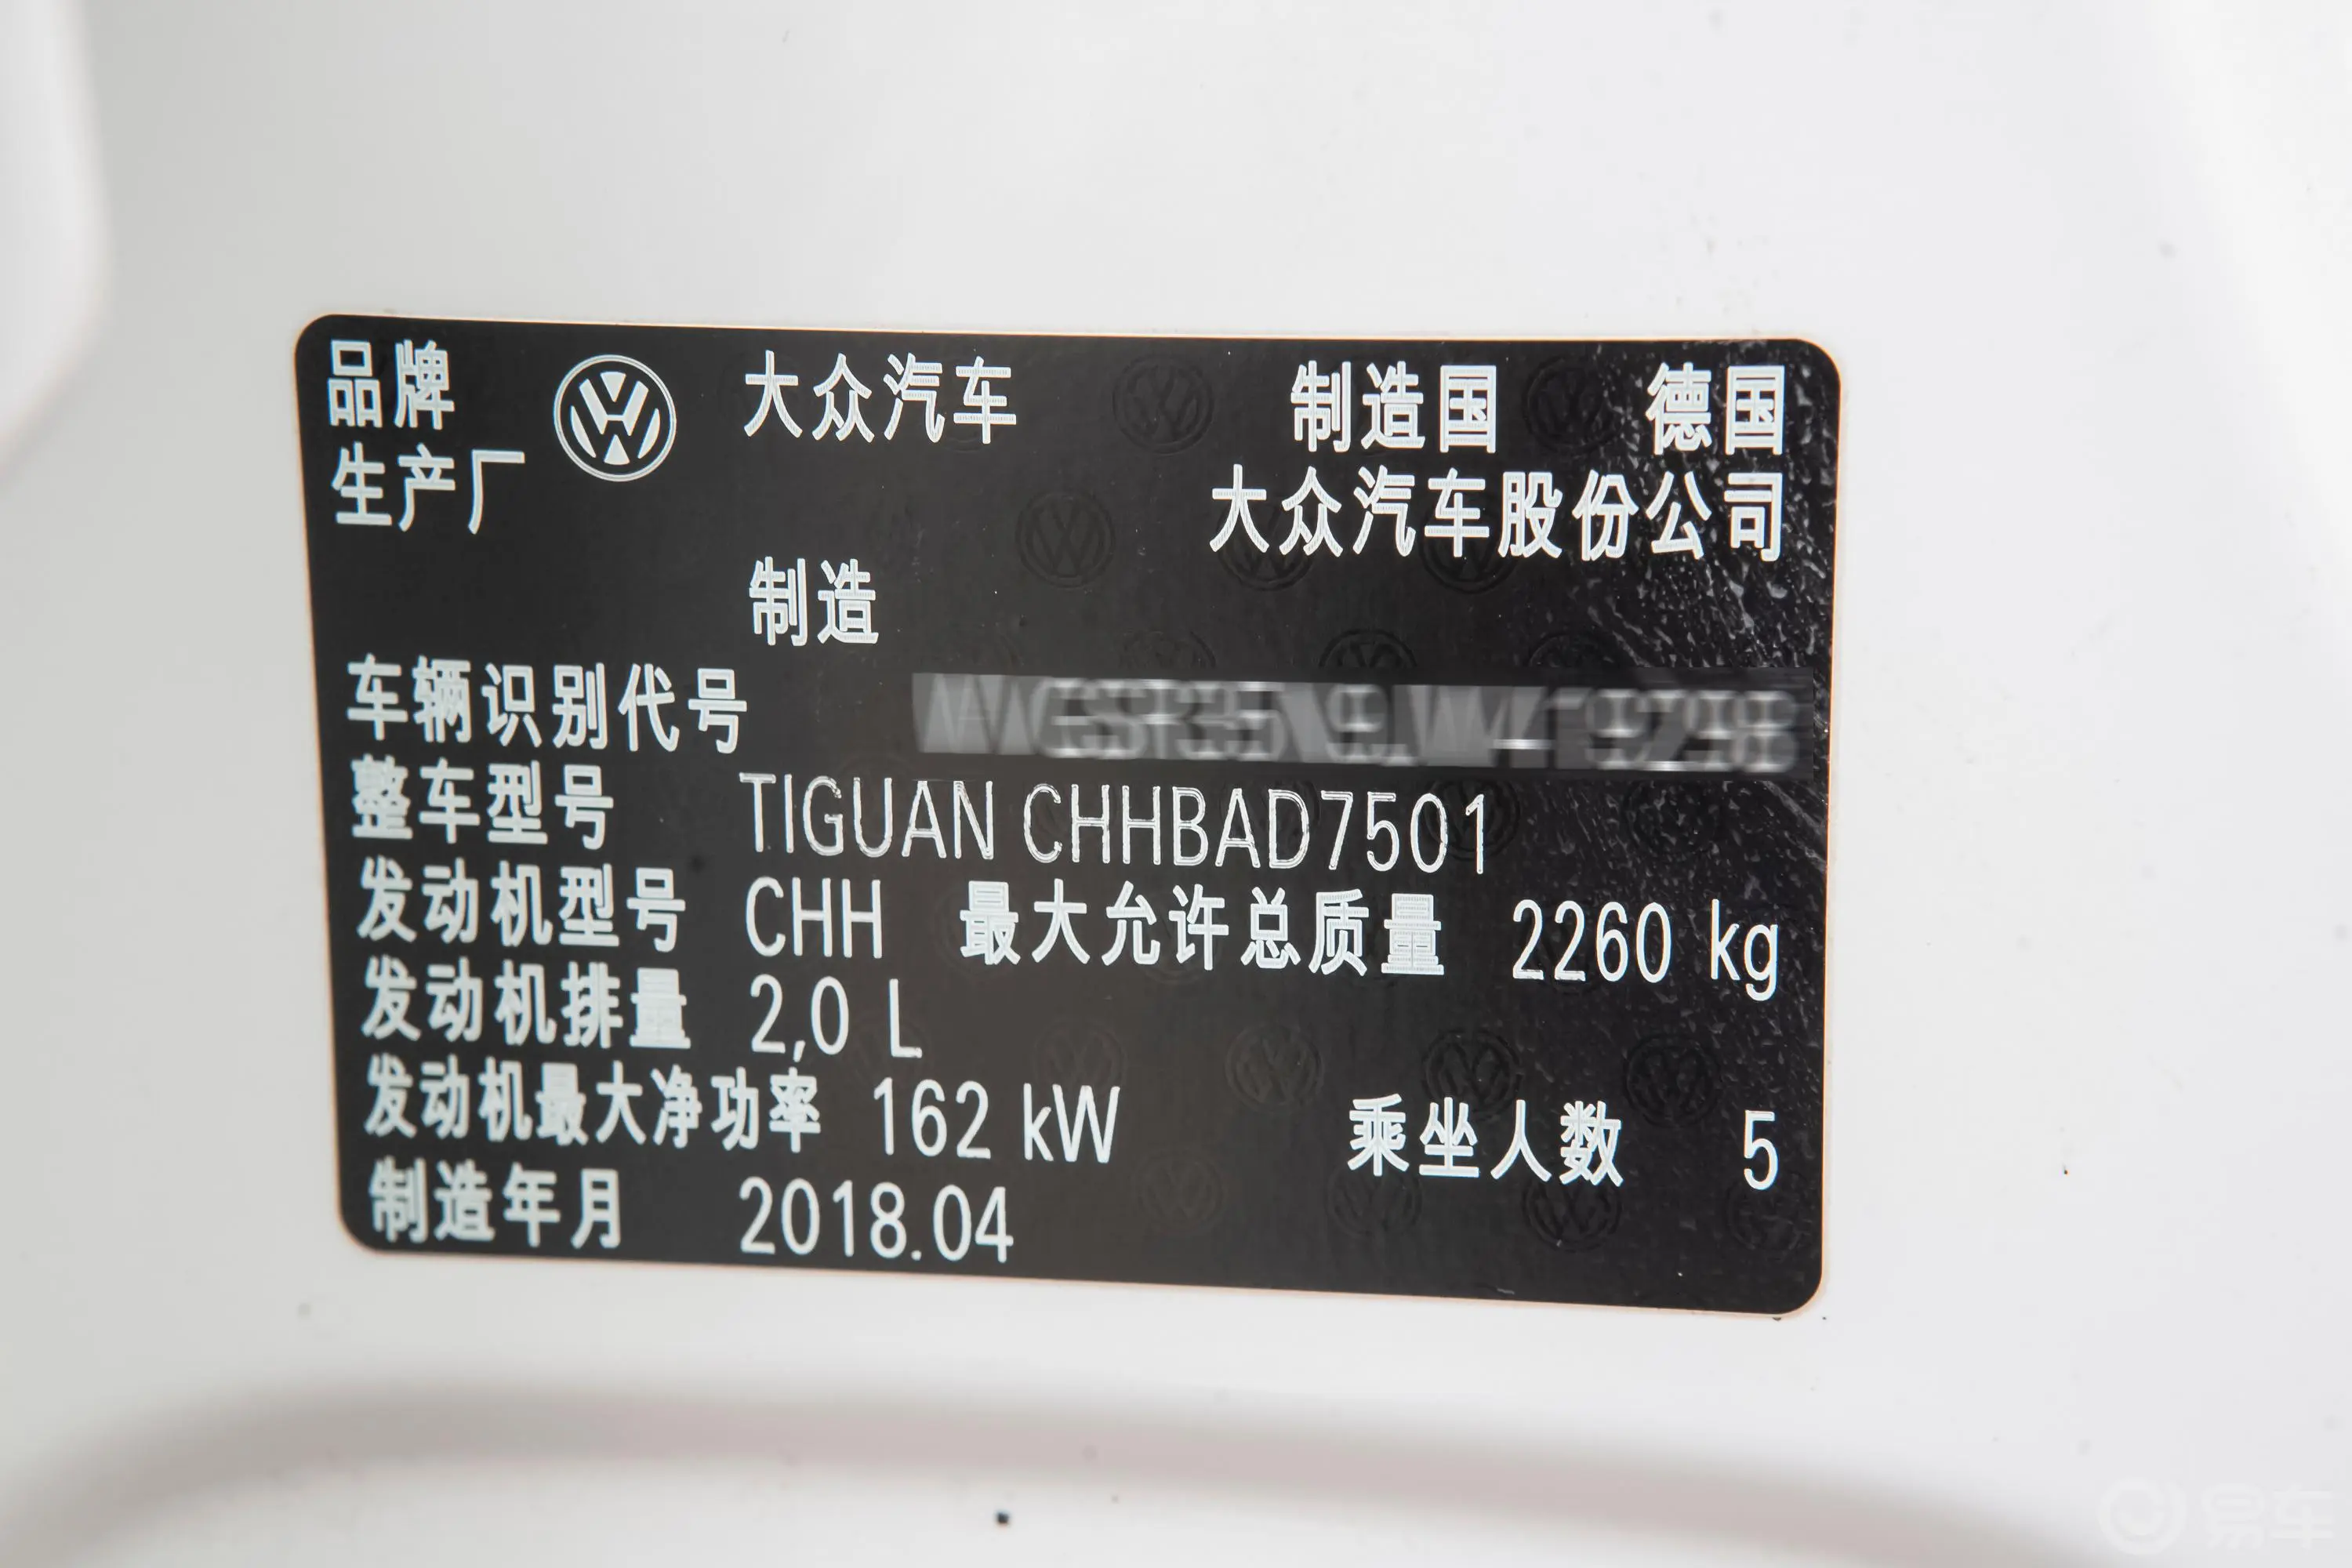 Tiguan380TSI 四驱 R-Line车辆信息铭牌